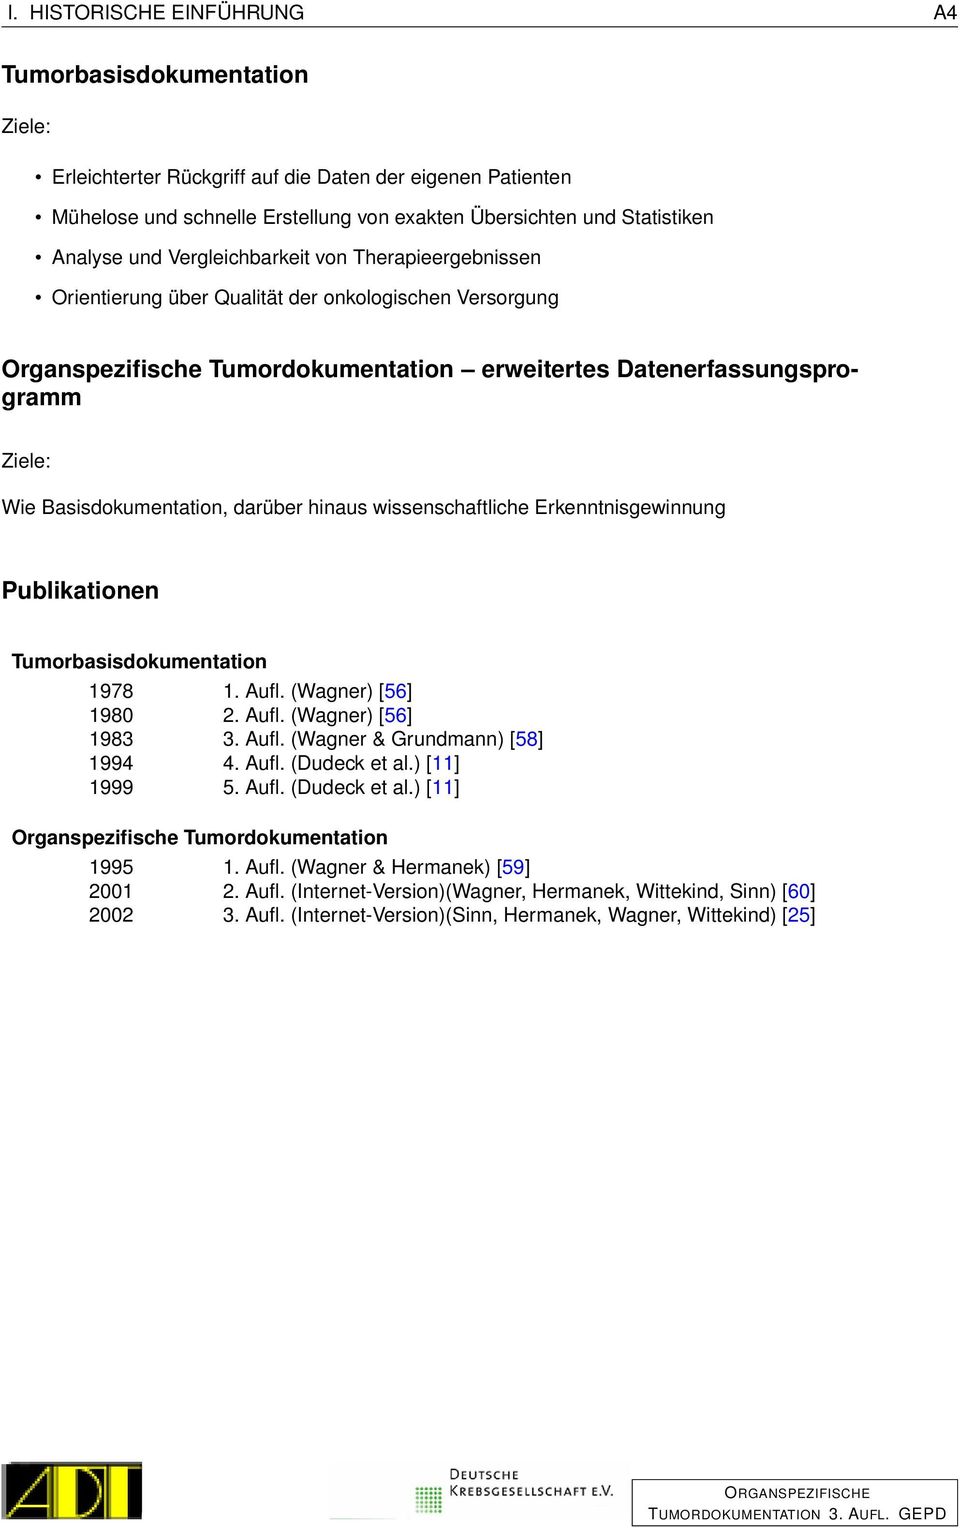 Basisdokumentation, darüber hinaus wissenschaftliche Erkenntnisgewinnung Publikationen Tumorbasisdokumentation 1978 1. Aufl. (Wagner) [56] 1980 2. Aufl. (Wagner) [56] 1983 3. Aufl. (Wagner & Grundmann) [58] 1994 4.